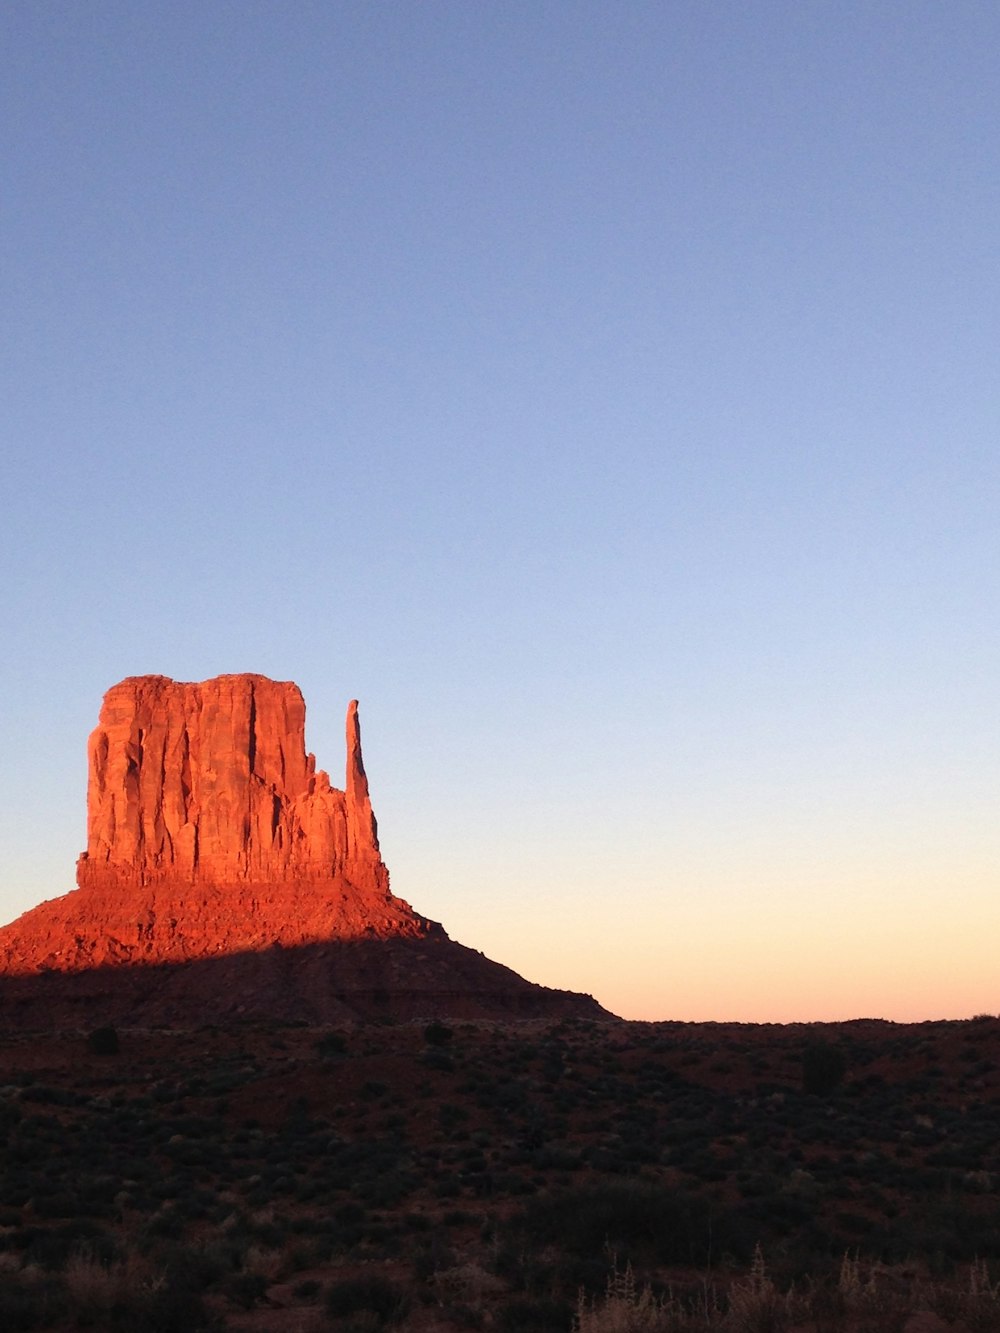 사막 한가운데에 있는 키 큰 붉은 암석